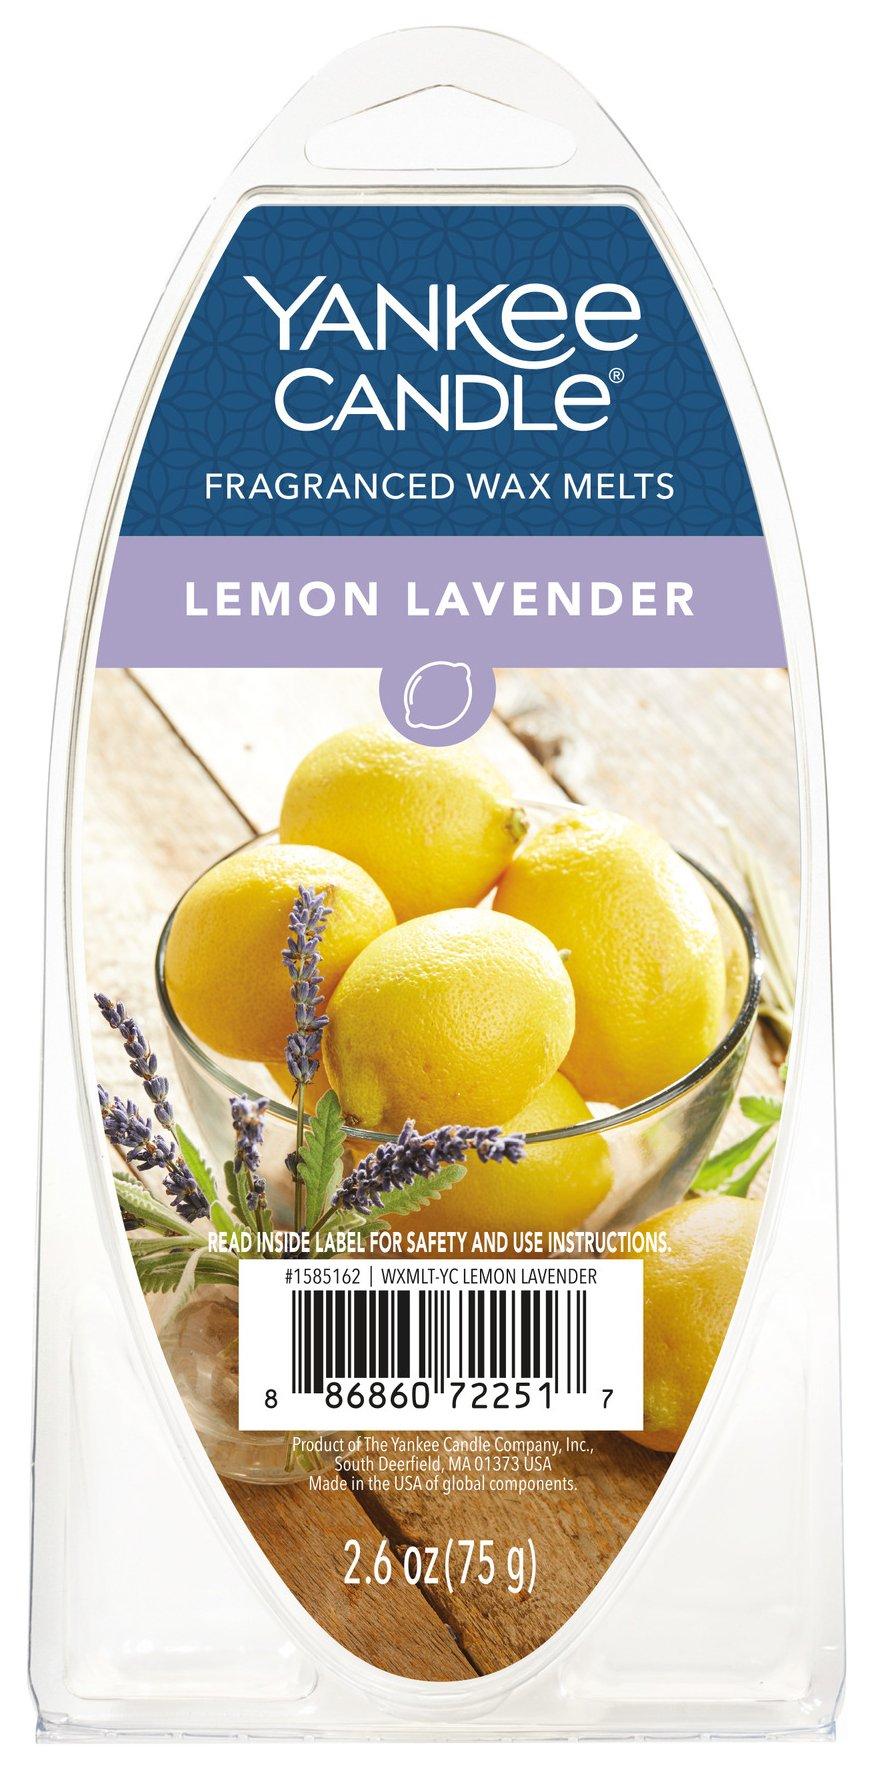 6pk Lemon Lavender Wax Melts